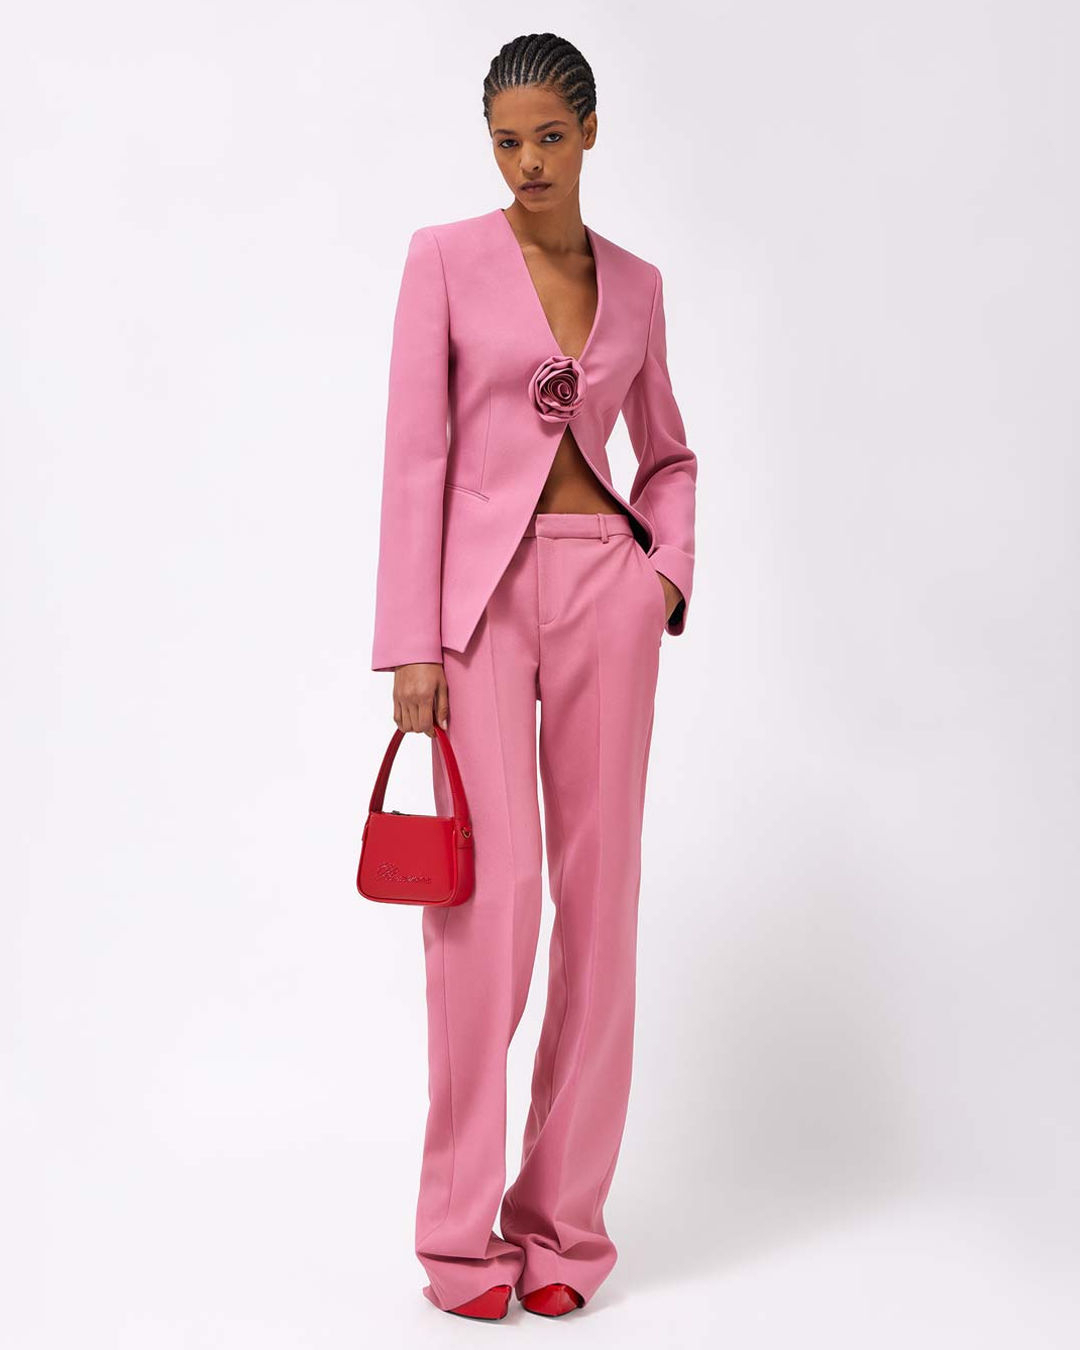 ALDO x Barbie mini crossbody bag in pink satin